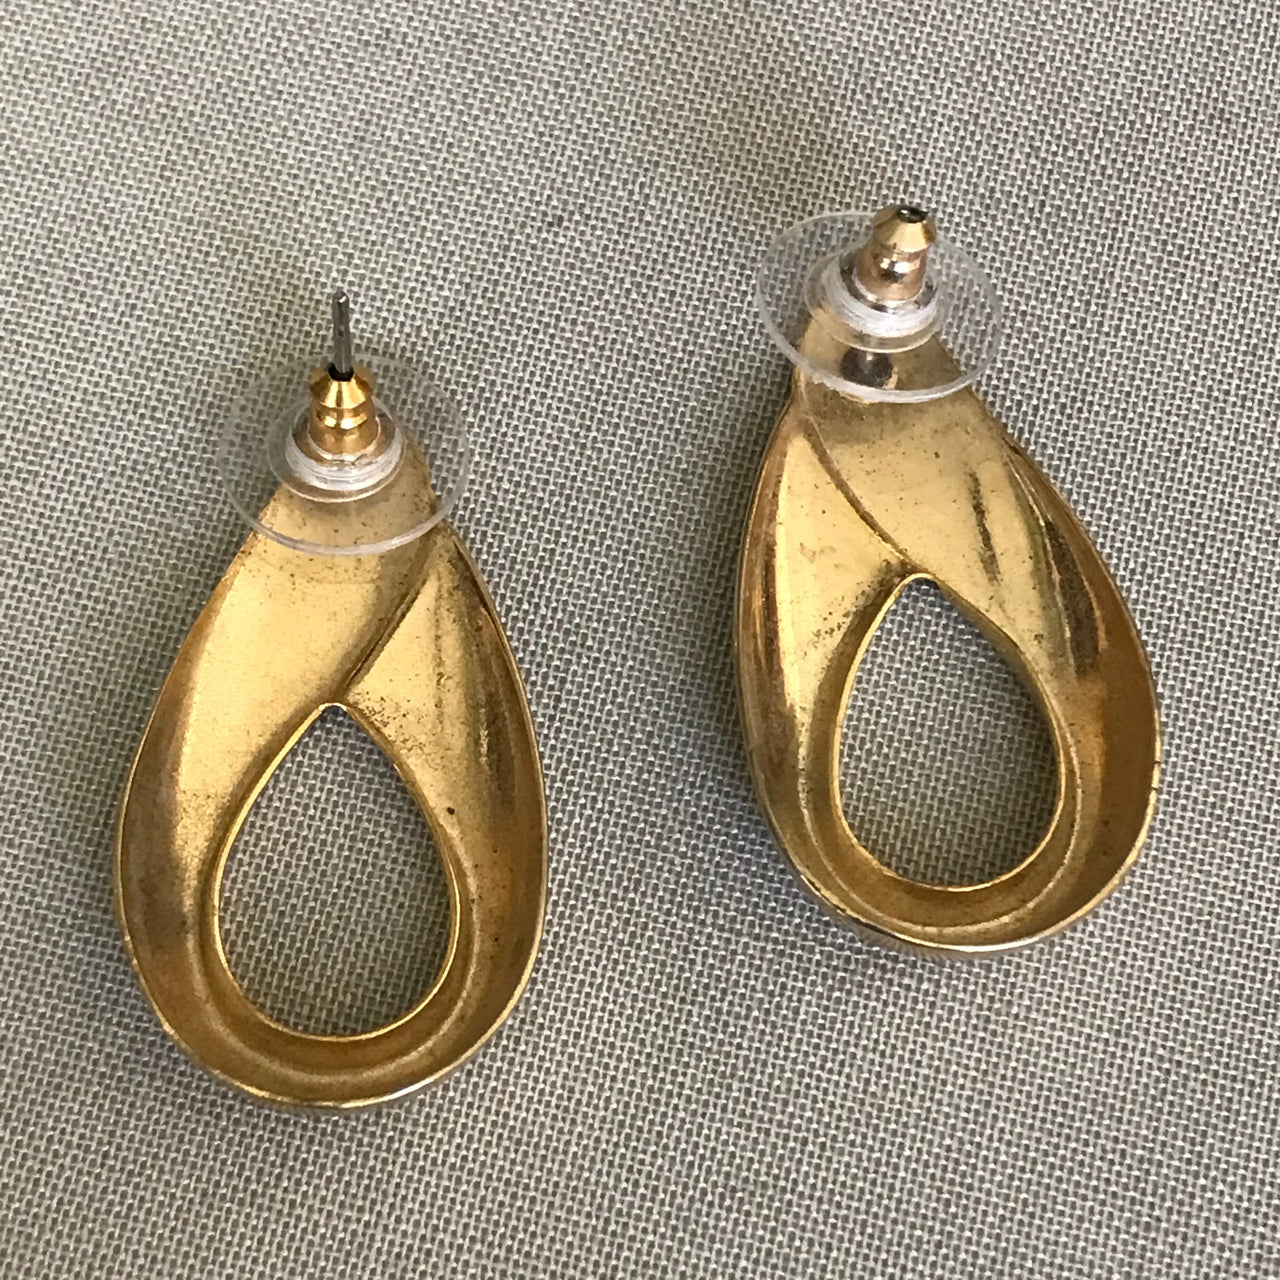 Gold Abstract Teardrop Shape Pierced Earrings Jewelry Bloomers and Frocks 